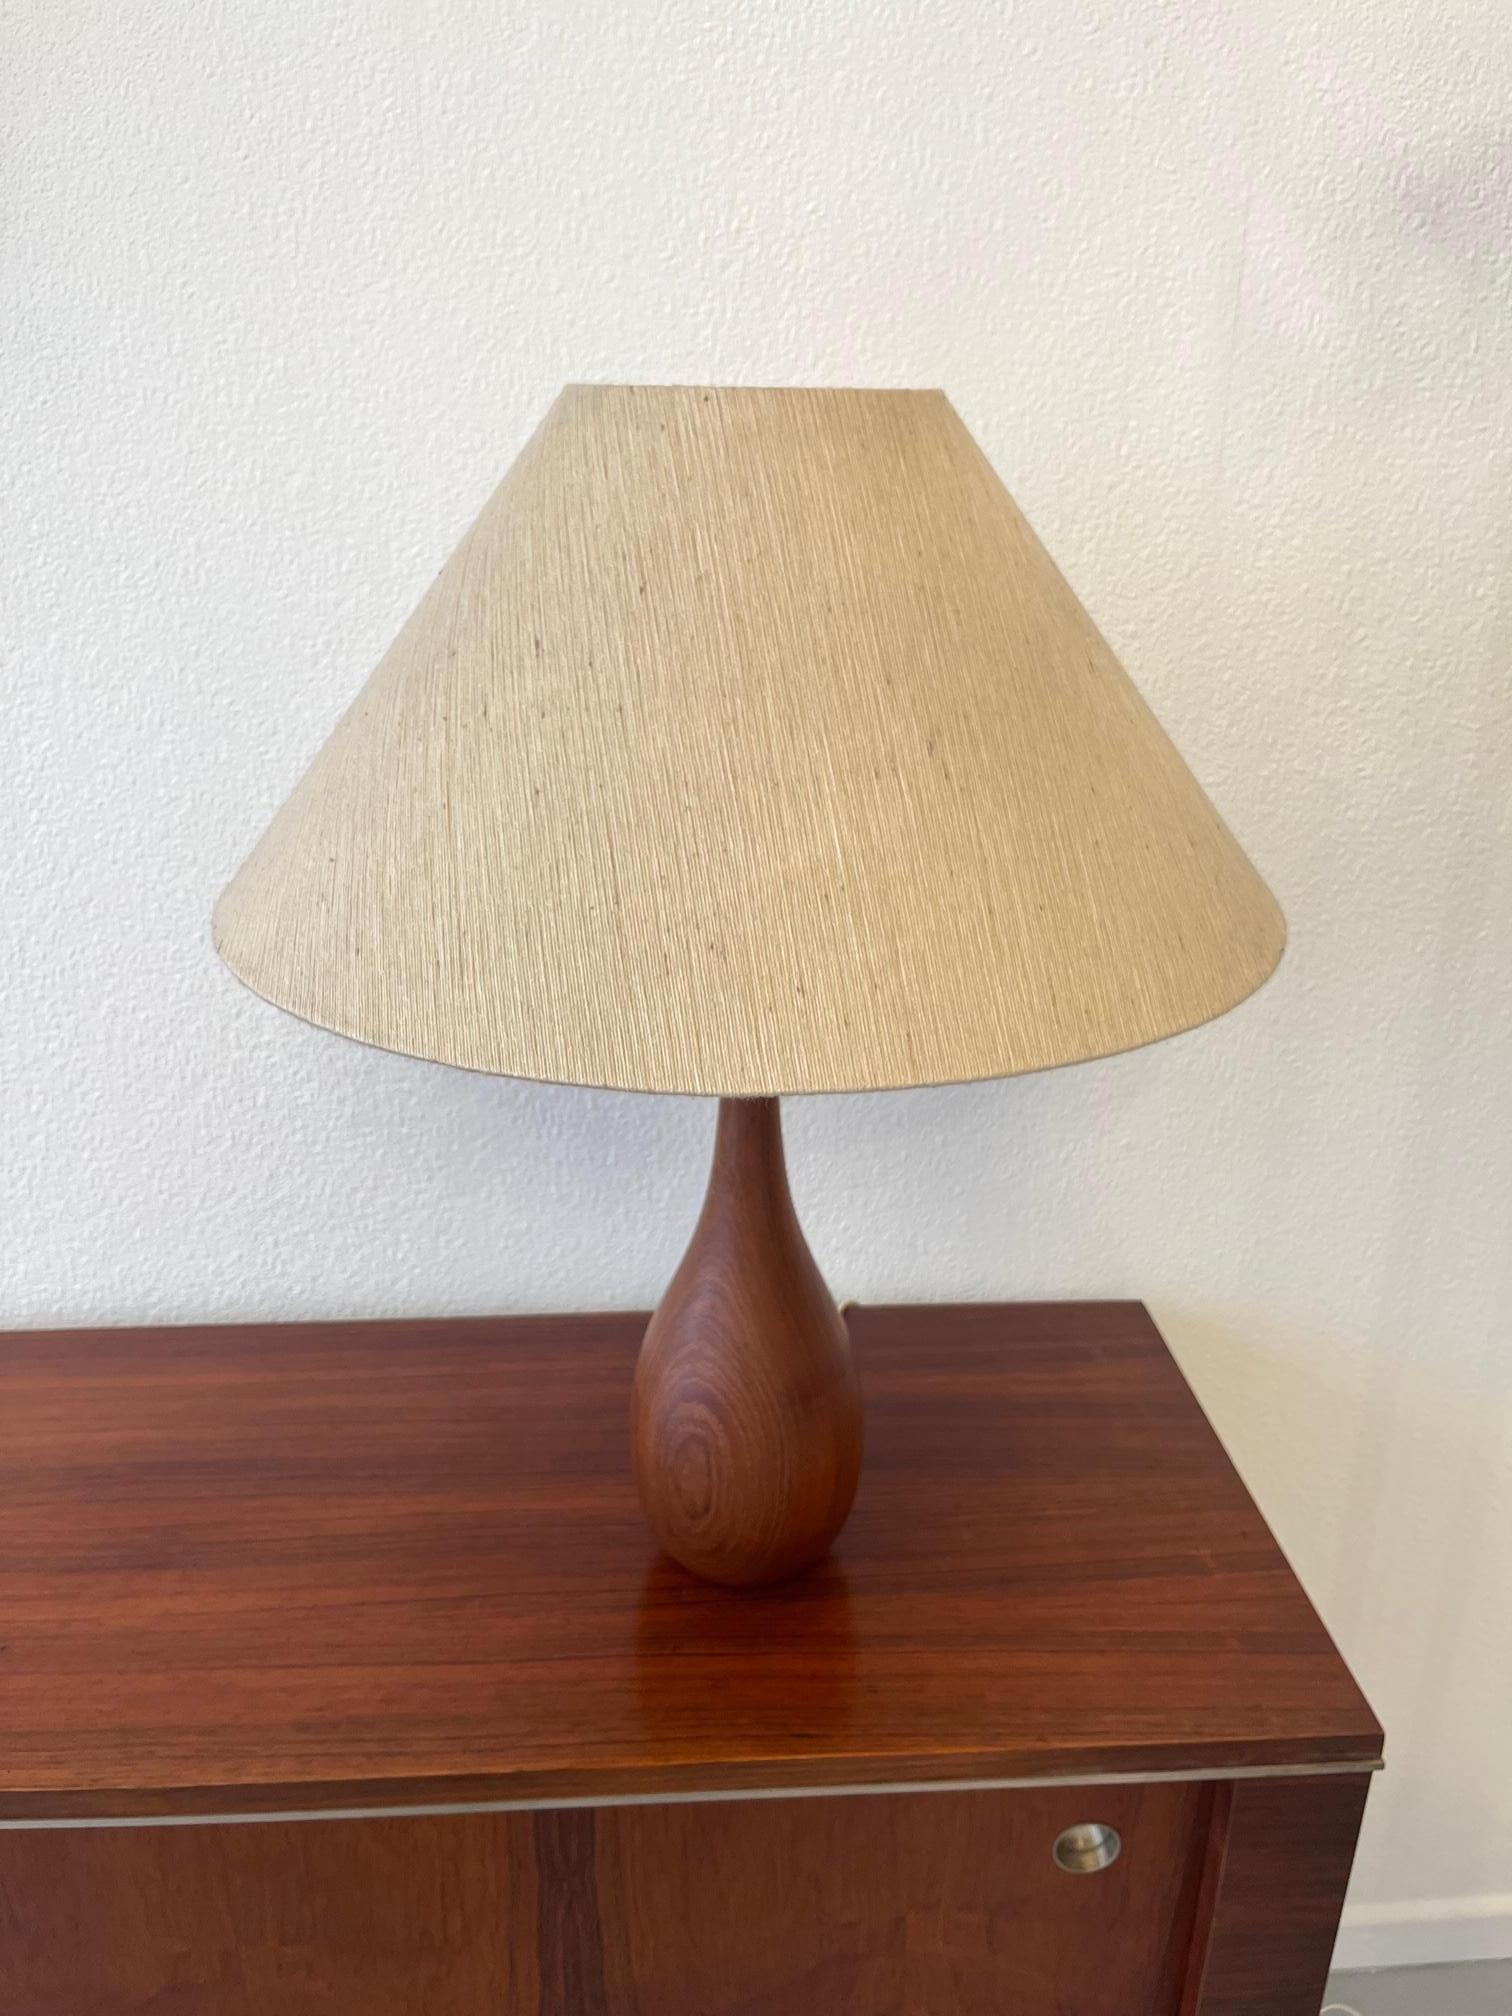 Teak Bottle Shape Table Lamp by ESA, Denmark ca. 1960s For Sale 5